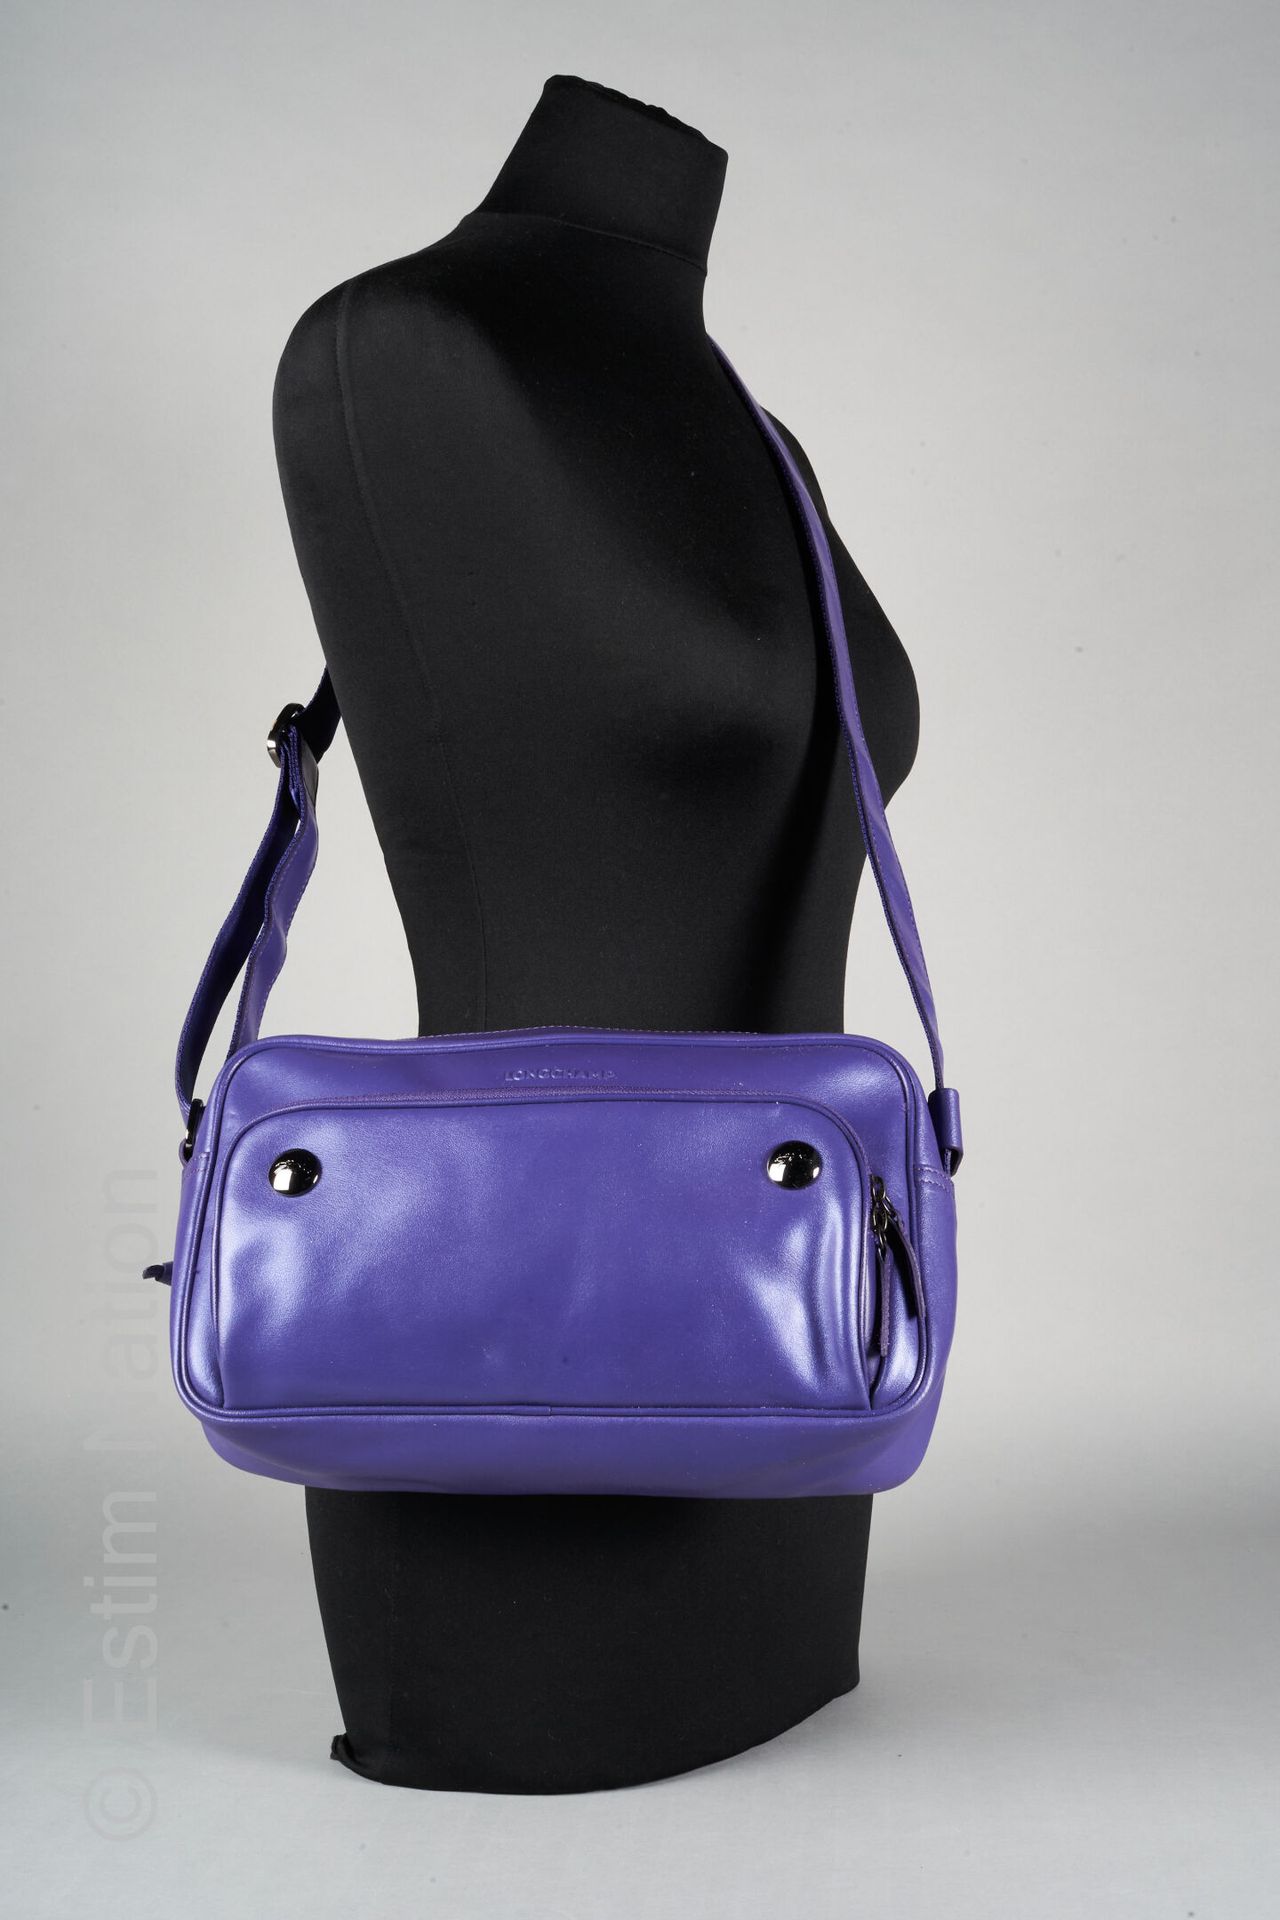 LONGCHAMP SAC rectangulaire en cuir violet, bandoulière réglable (dust bag) (éta&hellip;